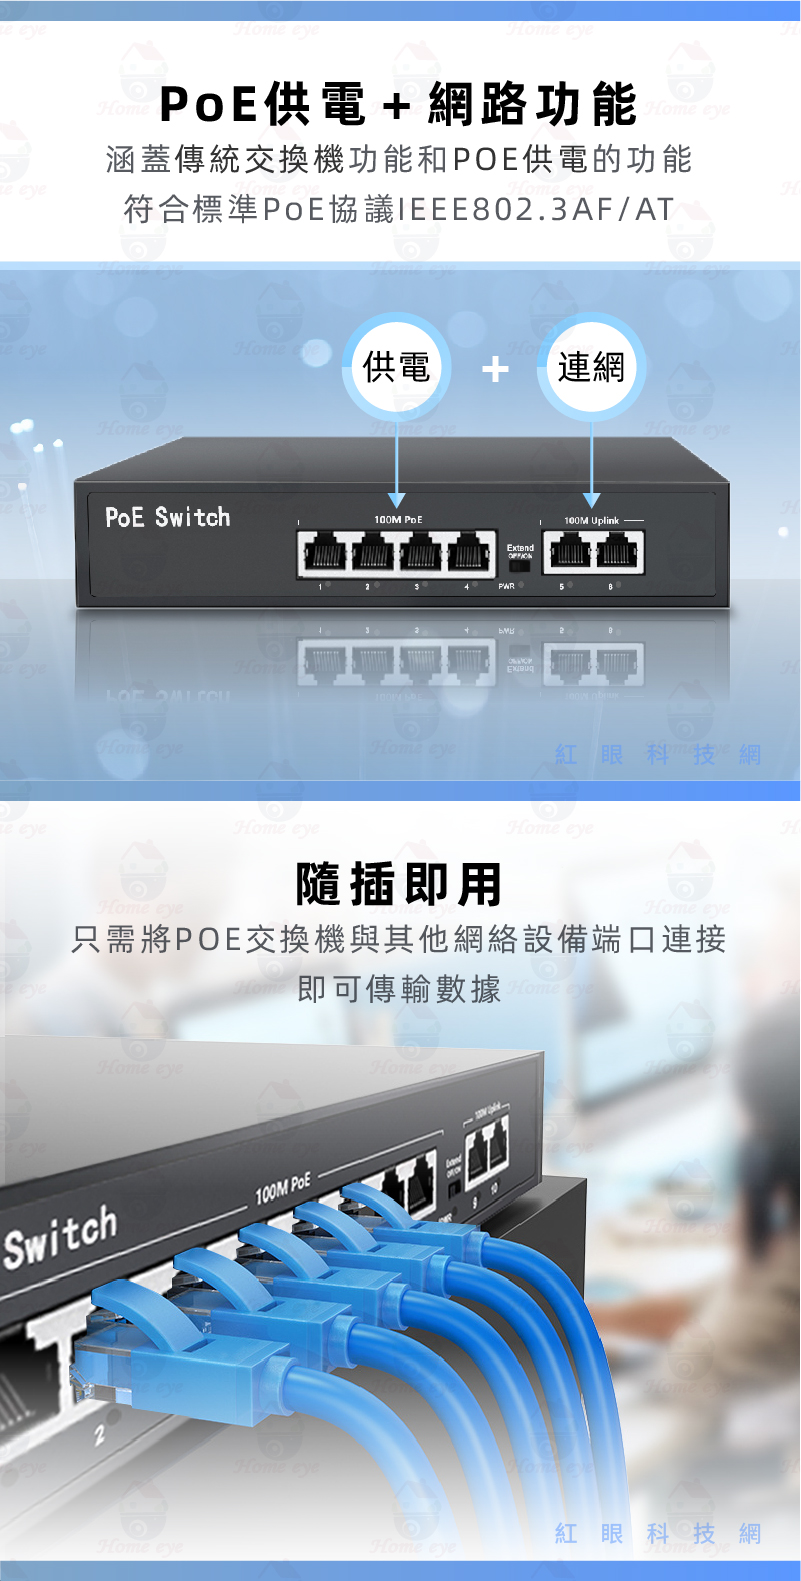 PoE供電埠+網路埠 ★ 過載保護、隨插即用、高性能、低功耗